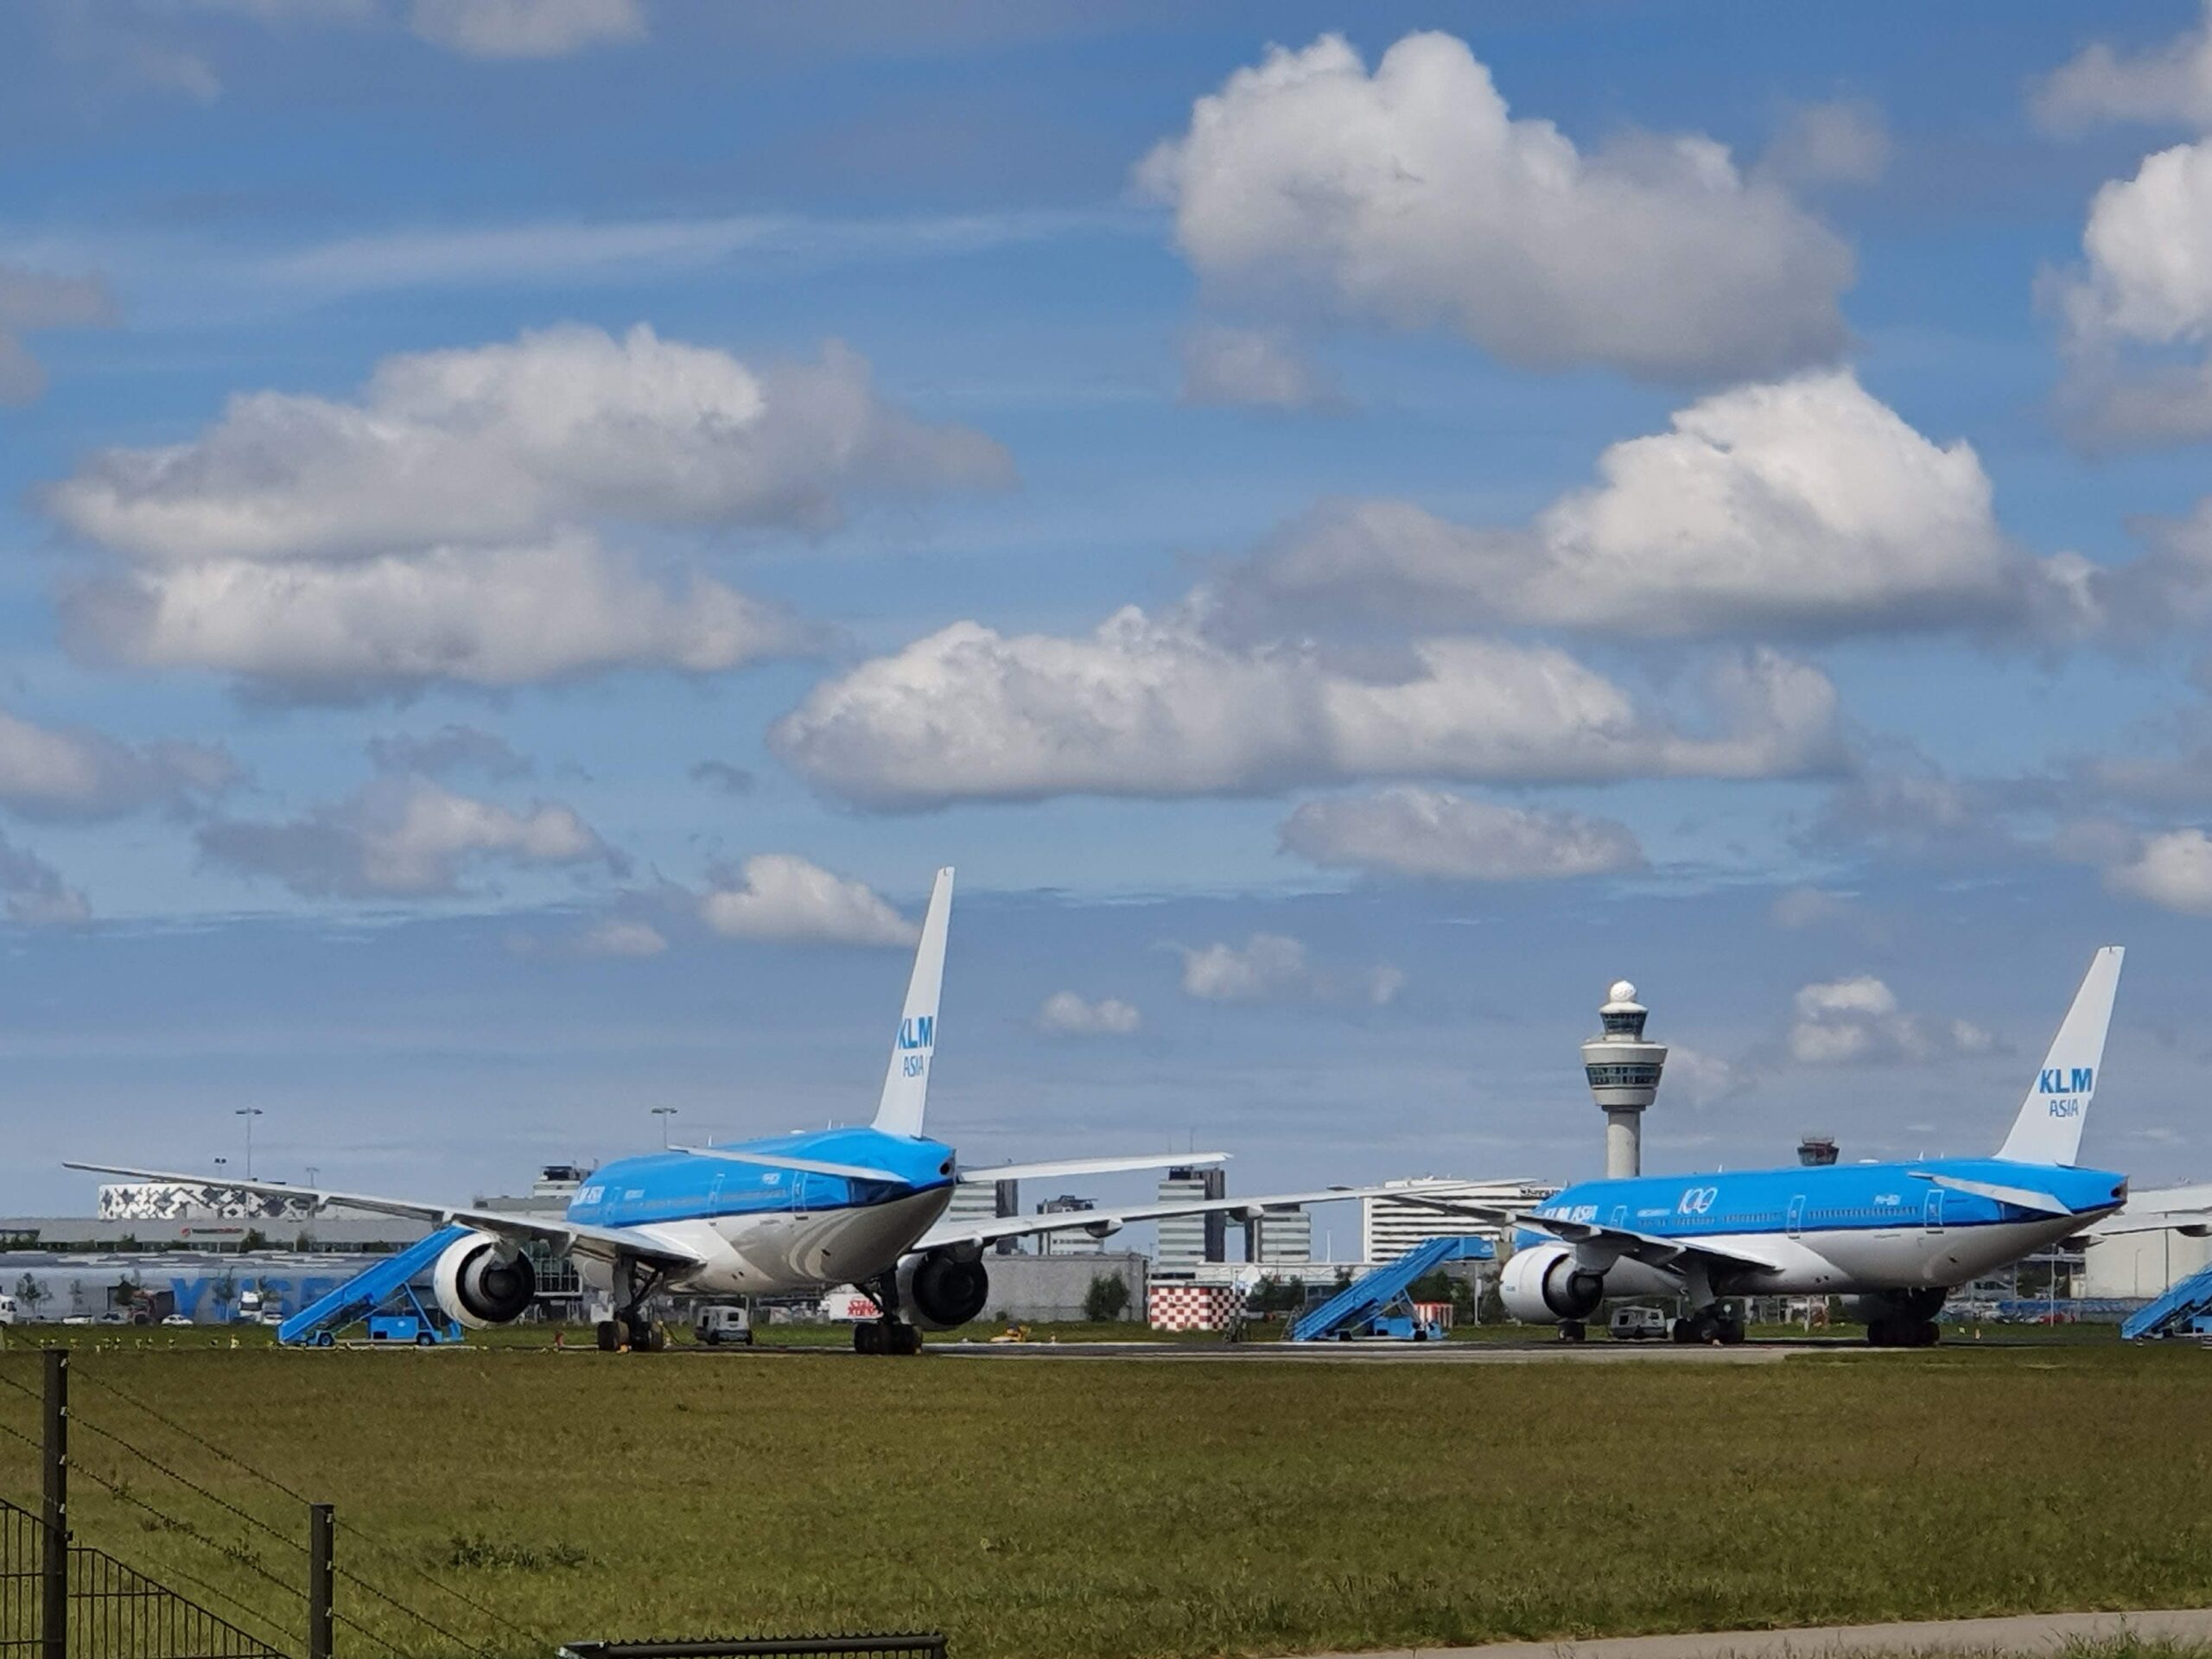 Zelfde advocaat die steunpakket KLM in contract goot ingeschakeld om kansen rechtszaak in te schatten